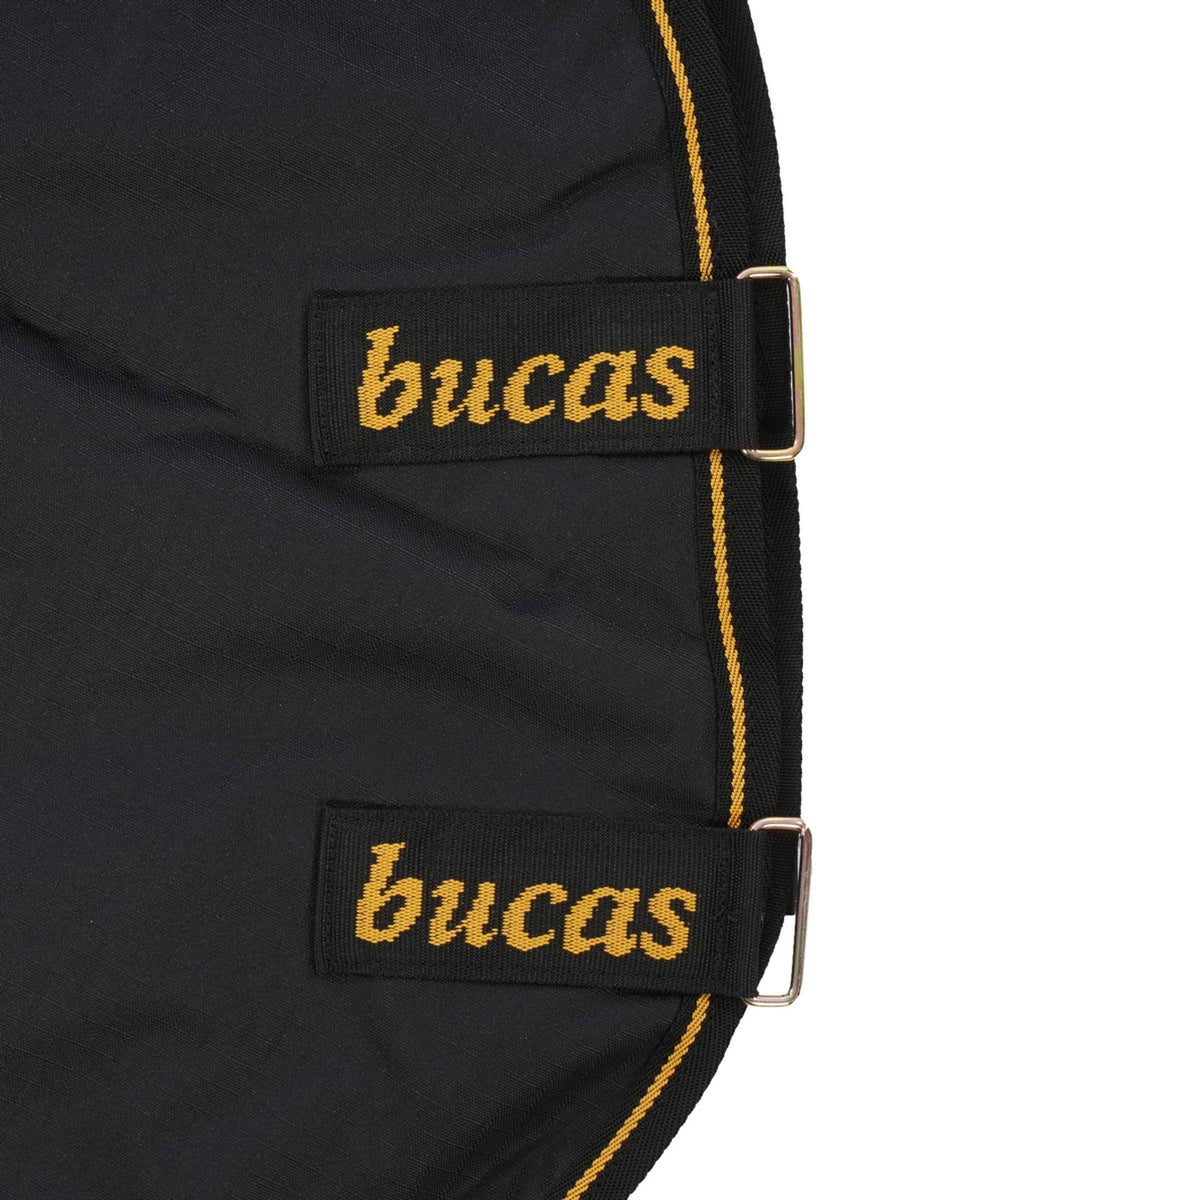 Bucas Couvre-Cou Irish Turnout Combi Neck 50g Noir/Or